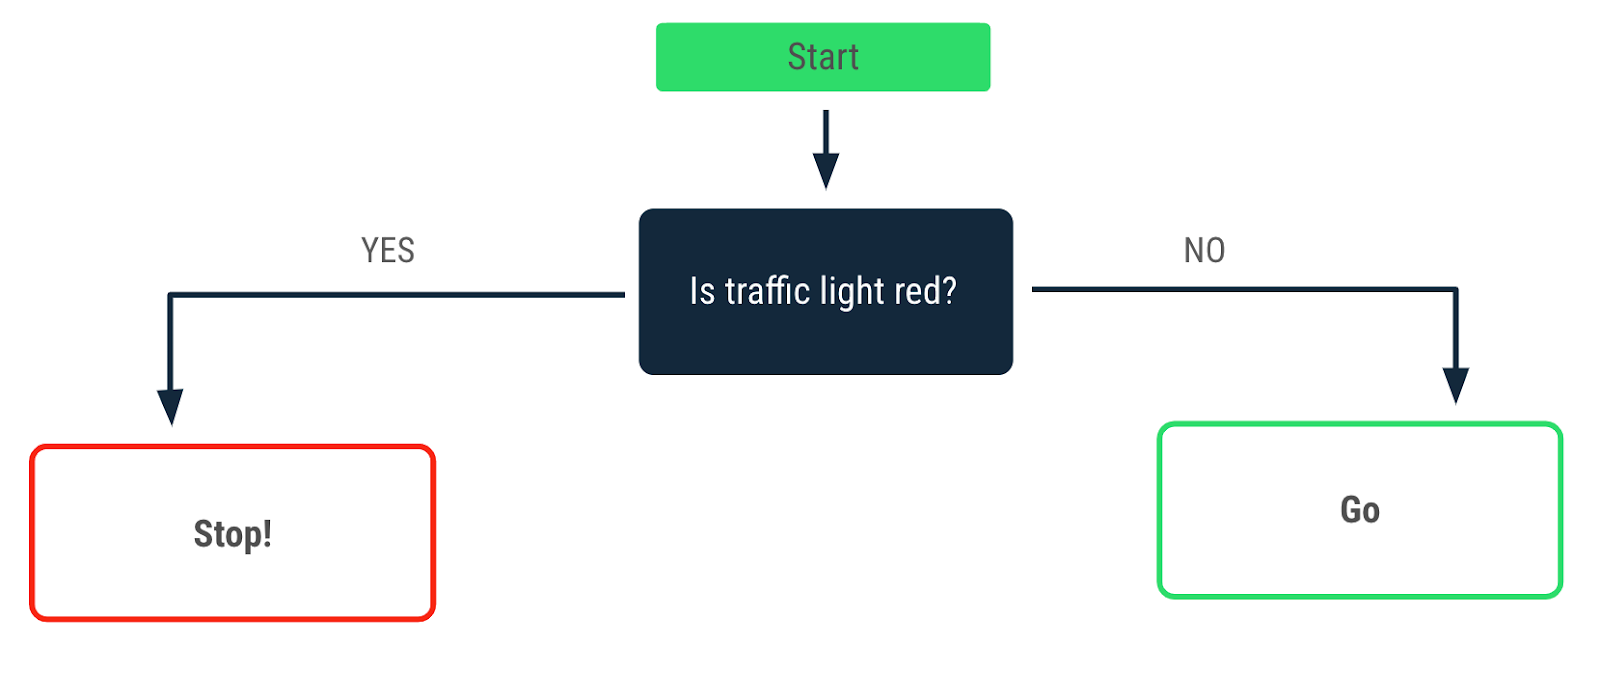 Um fluxograma que descreve uma decisão tomada quando a cor do semáforo é vermelha. Uma seta &quot;Yes&quot; (sim) aponta para uma mensagem &quot;Stop!&quot; (parar). Uma seta &quot;No&quot; (não) aponta para a mensagem &quot;Go&quot; (seguir).